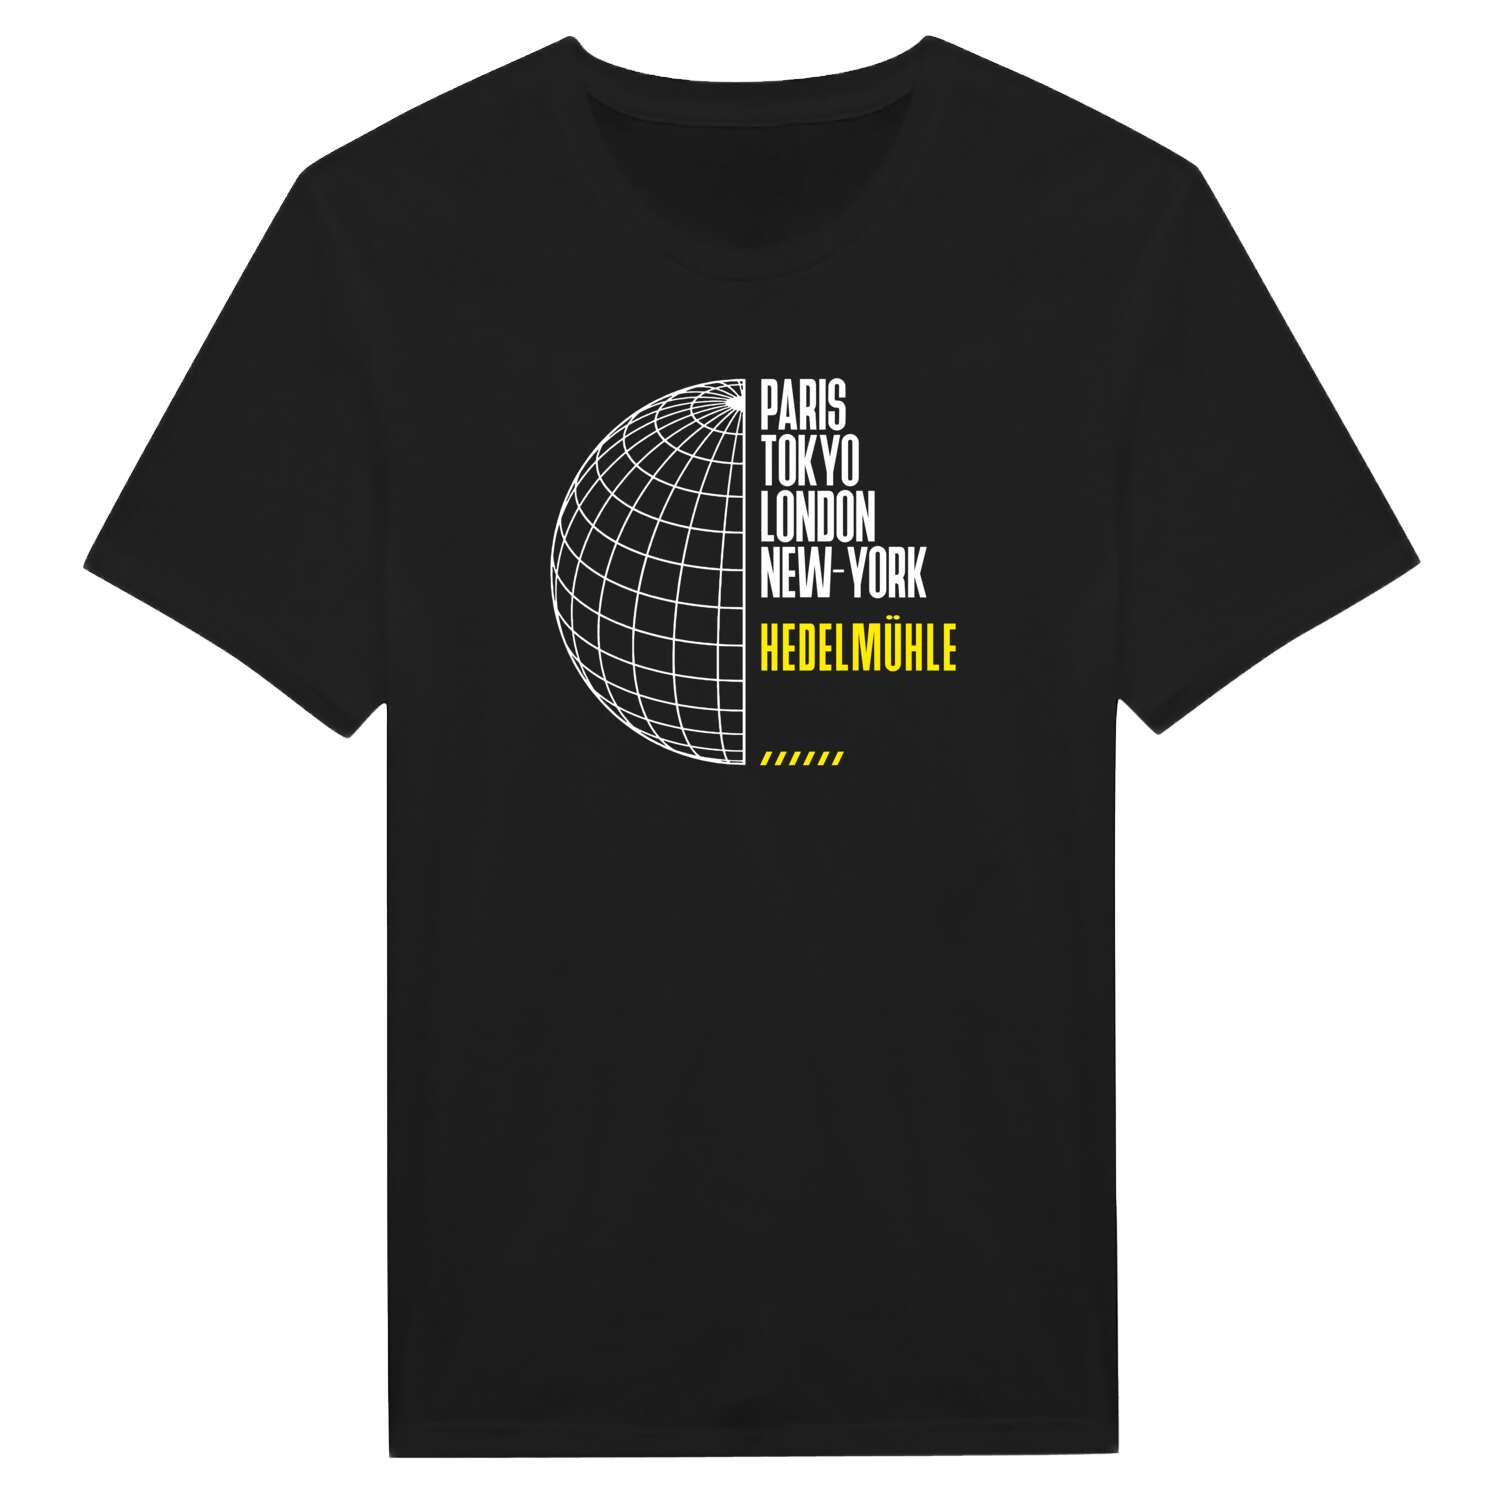 Hedelmühle T-Shirt »Paris Tokyo London«